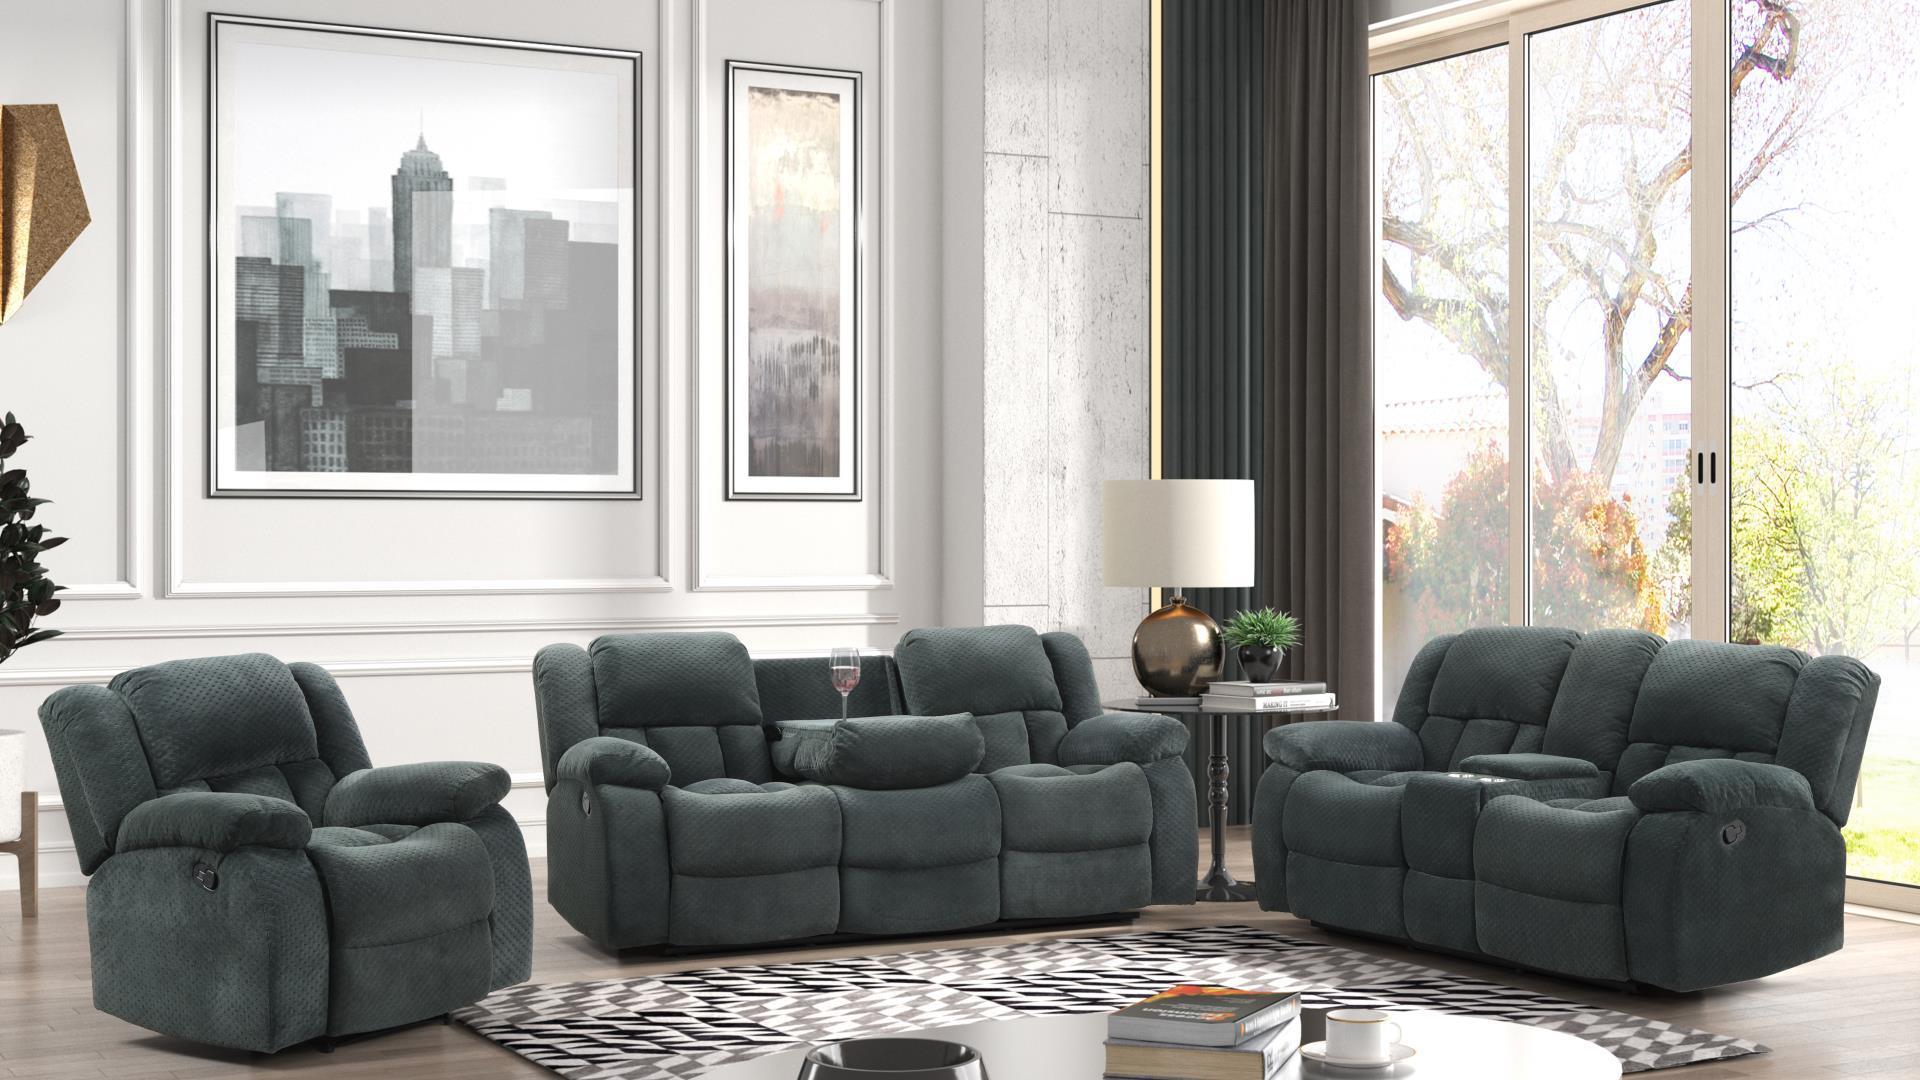 

    
Galaxy Home Furniture ARMADA Green Recliner Sofa Set Green ARMADA-S-L
